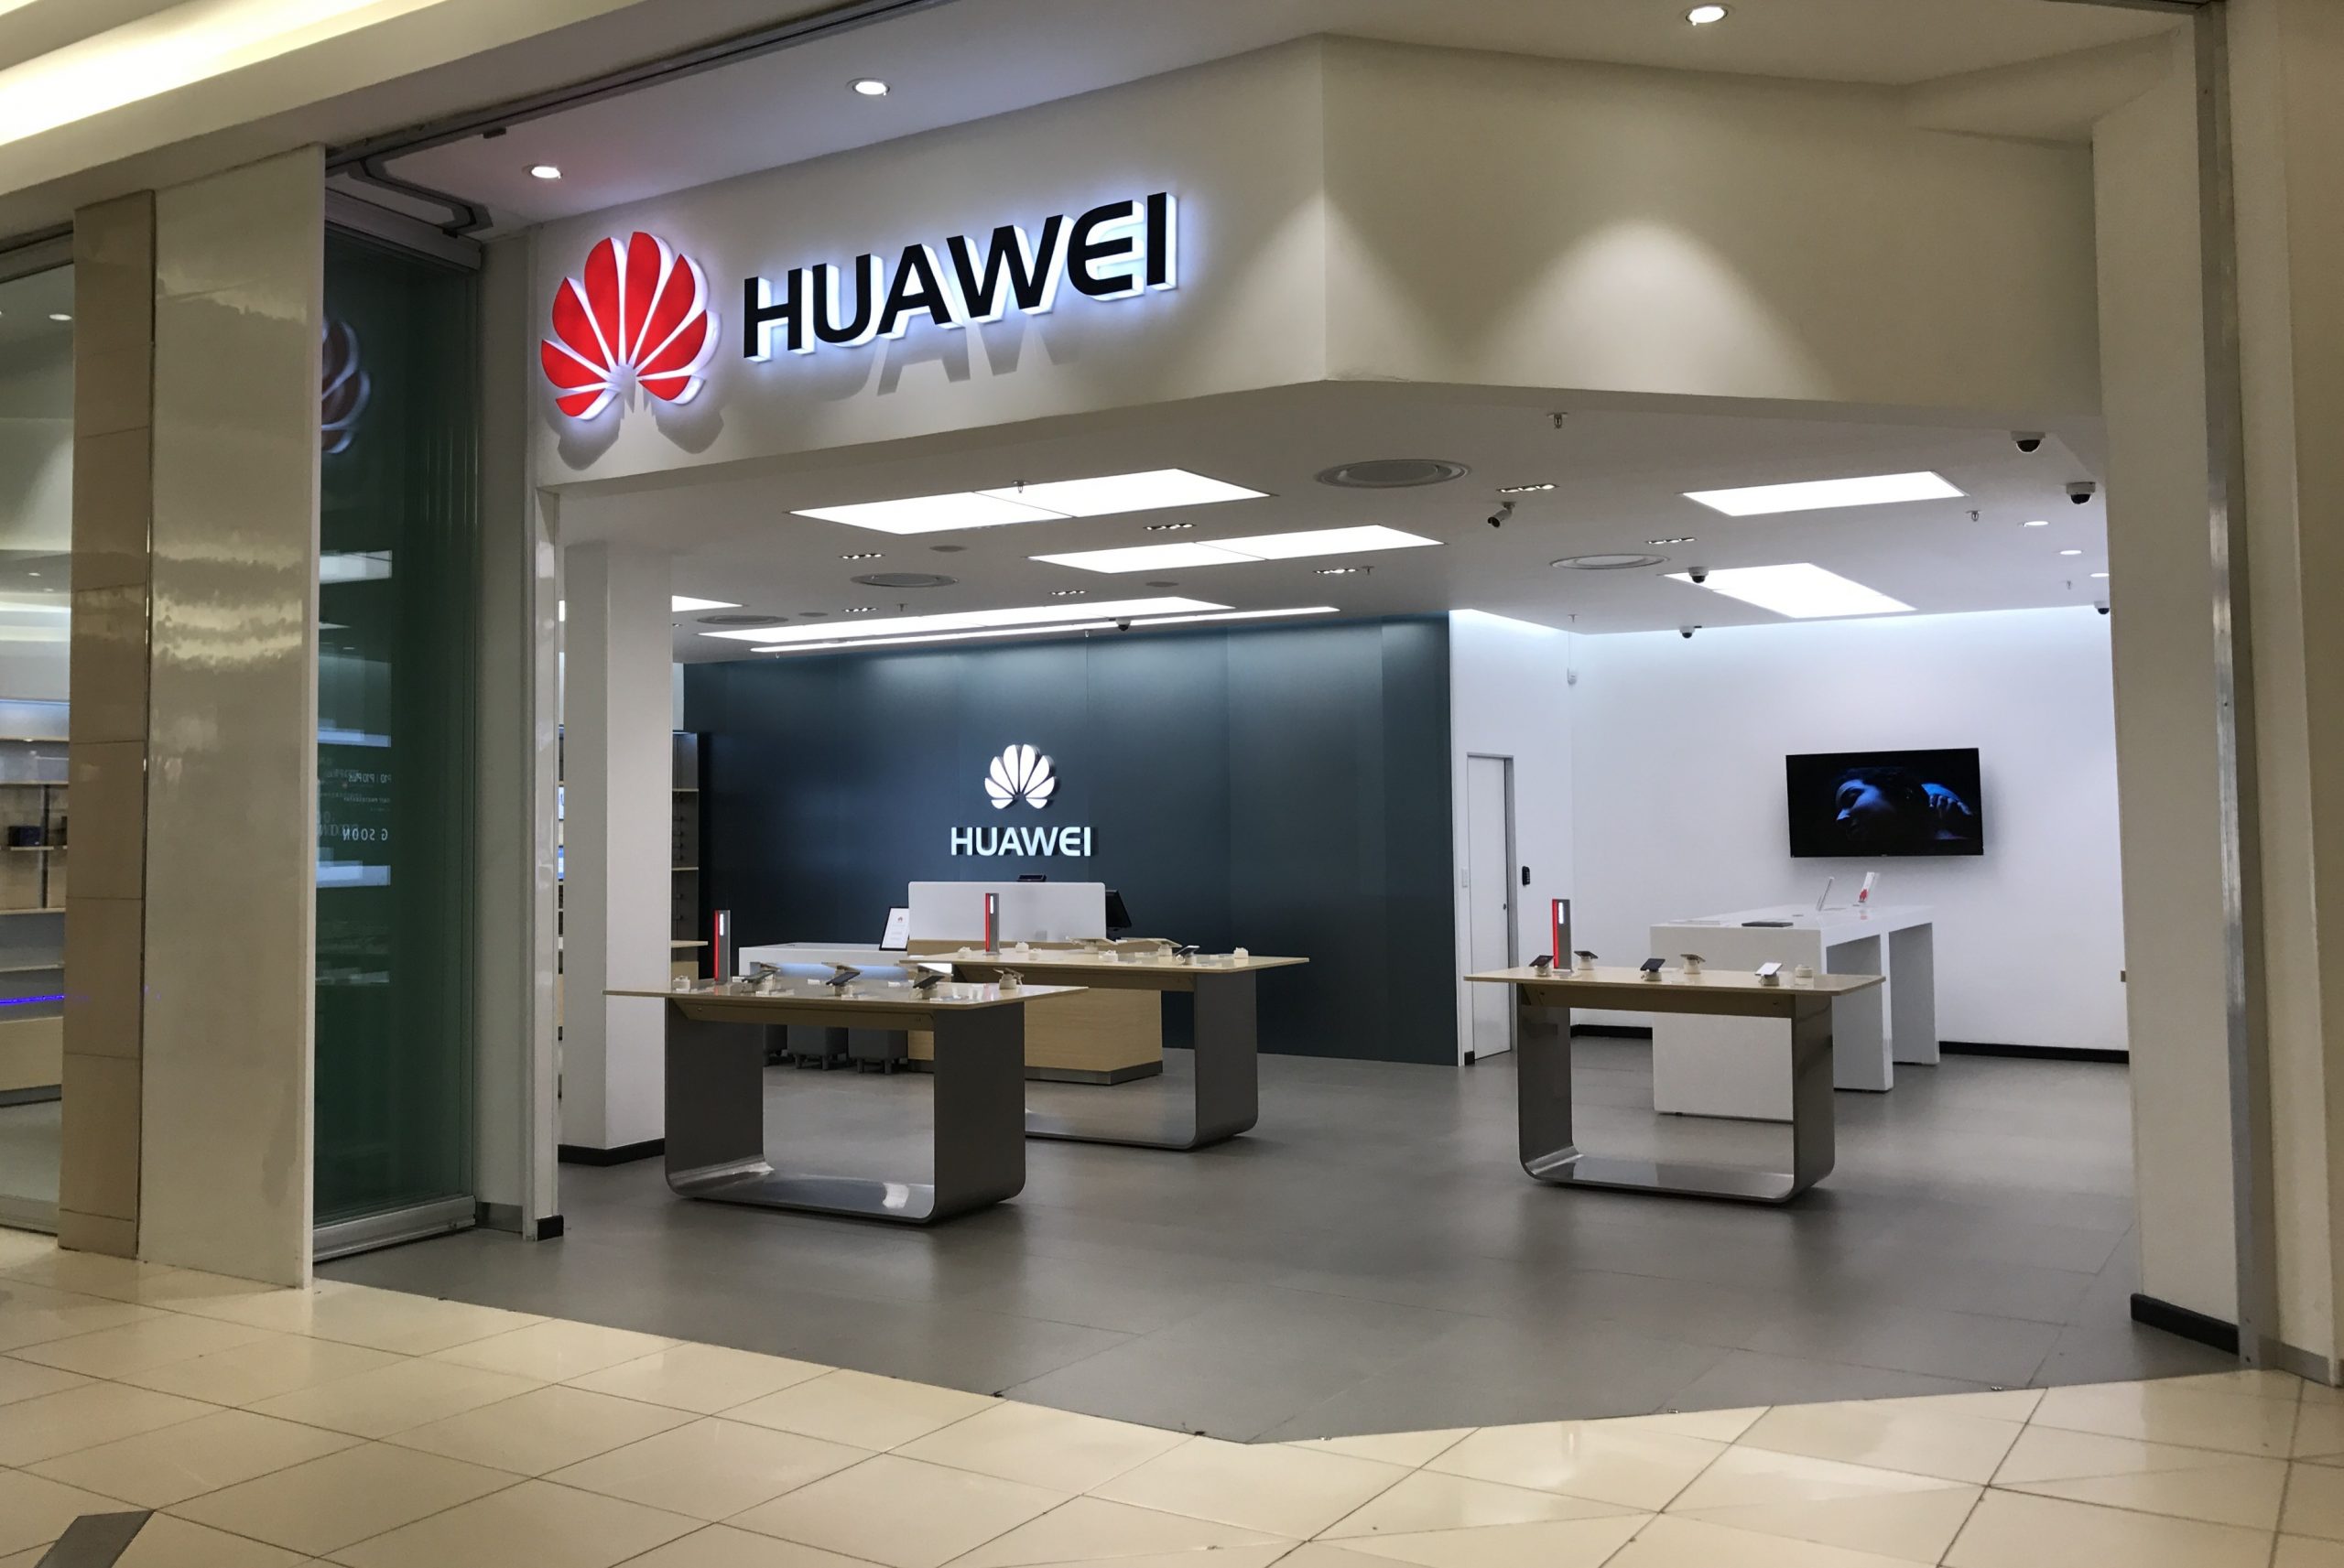 Medios de comunicación: Huawei ha reanudado el suministro de smartphones y otros aparatos a Rusia. La propia Huawei sigue en silencio